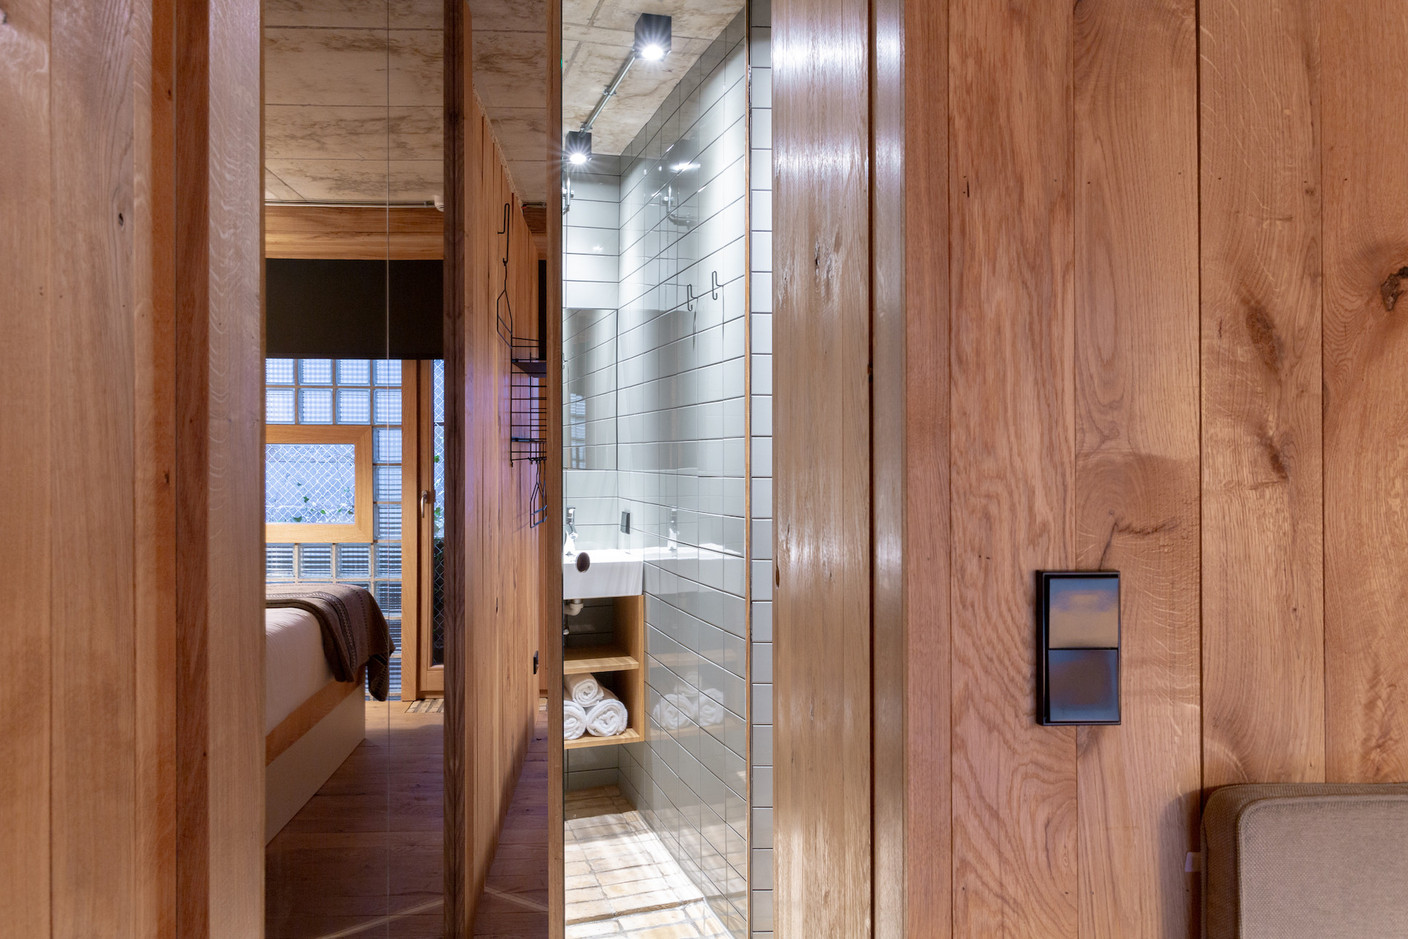 L’espace de douche prend place entre l’espace de séjour et l’espace nuit. (Photo: Patty Neu)